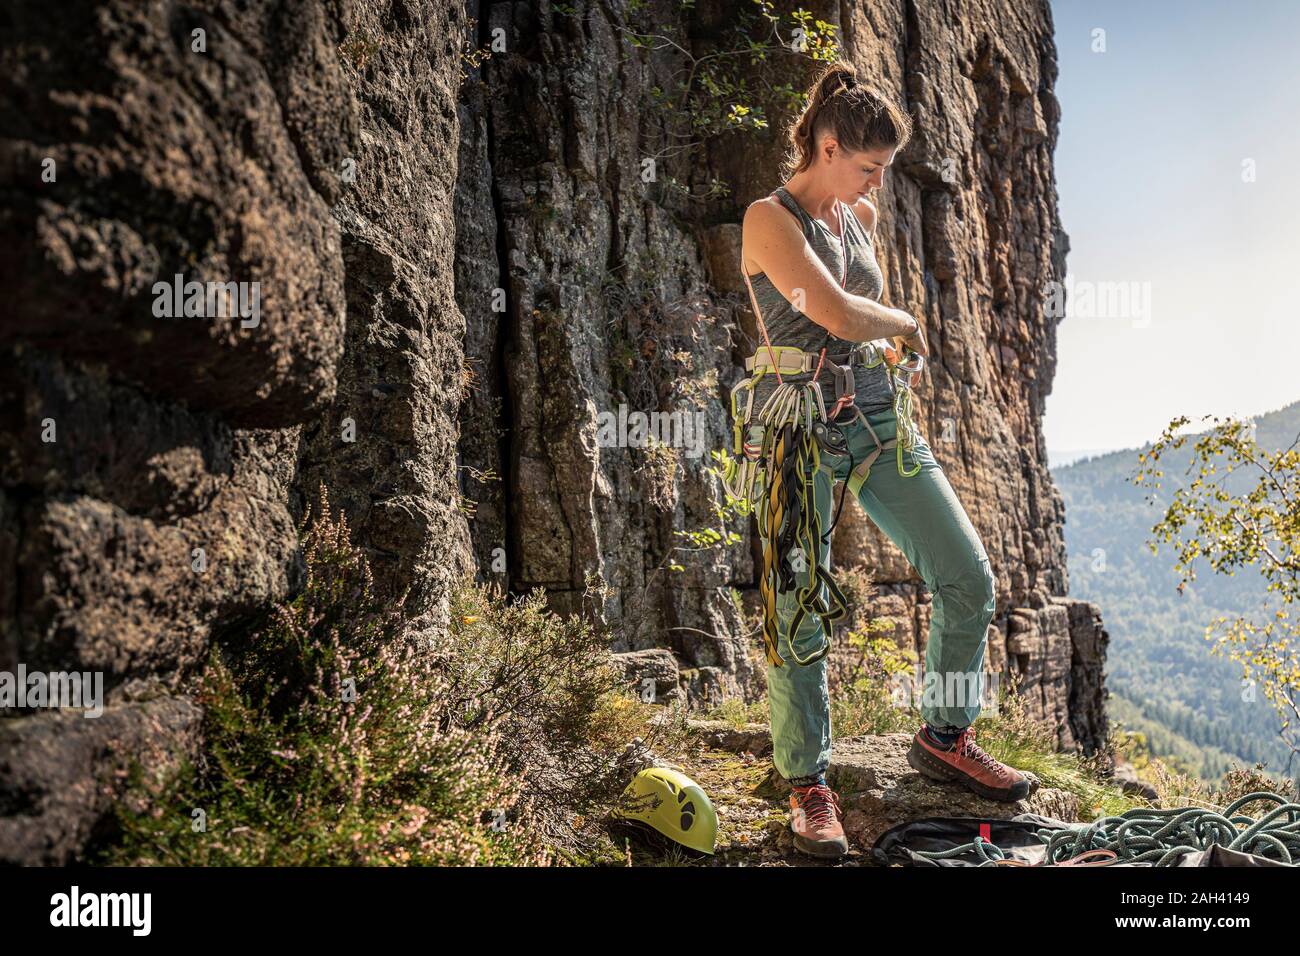 La donna si prepara a salire, mettendo sul cablaggio di arrampicata Foto Stock